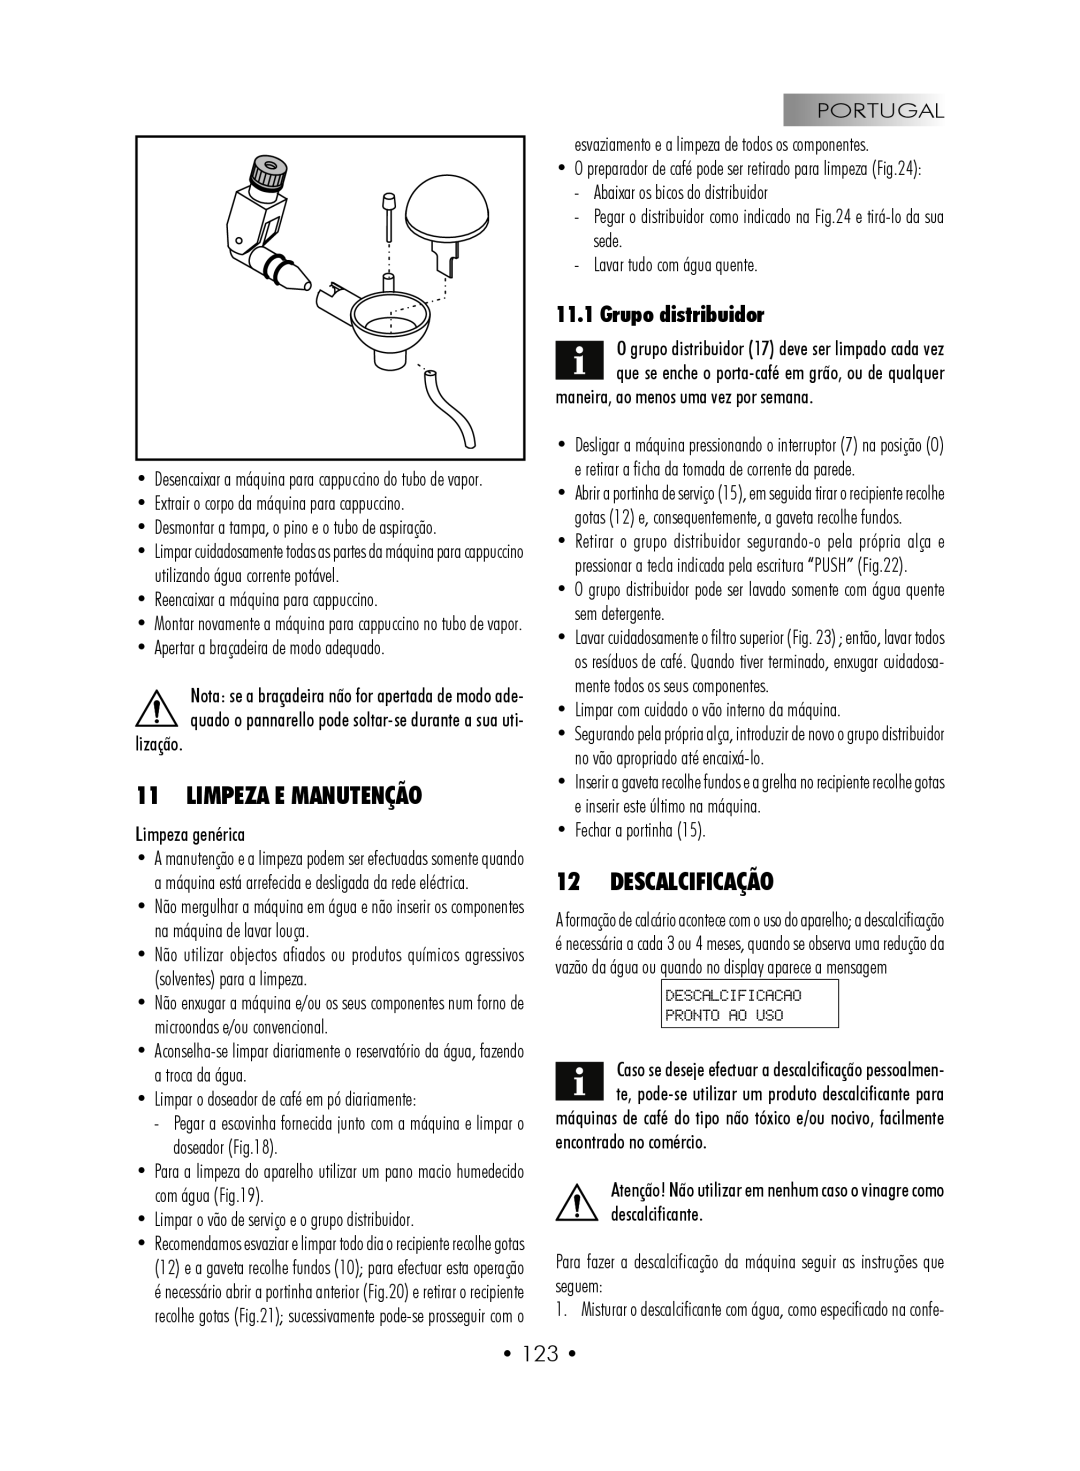 Gaggia SUP027YDR manual Limpeza E Manutenção, Descalcificação, Grupo distribuidor 